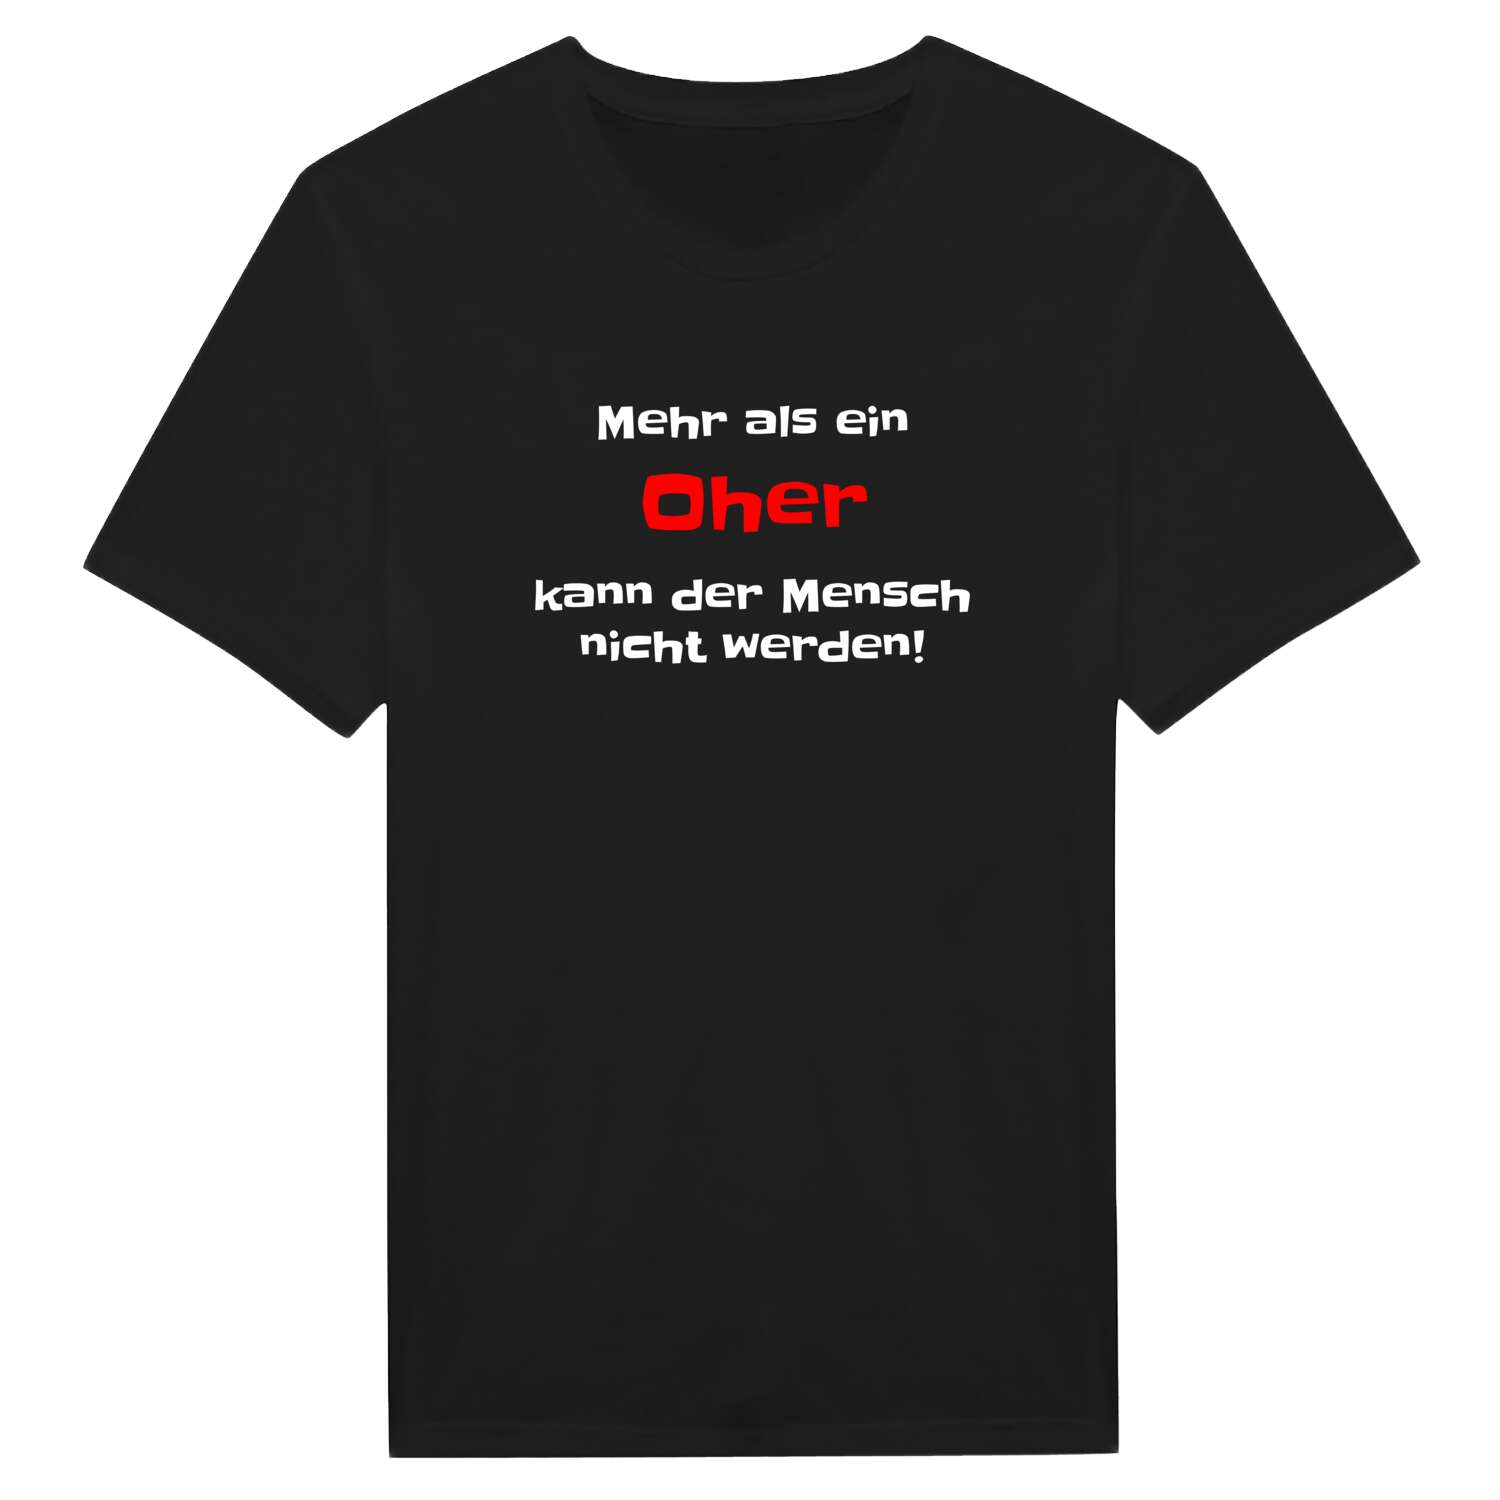 Oh T-Shirt »Mehr als ein«